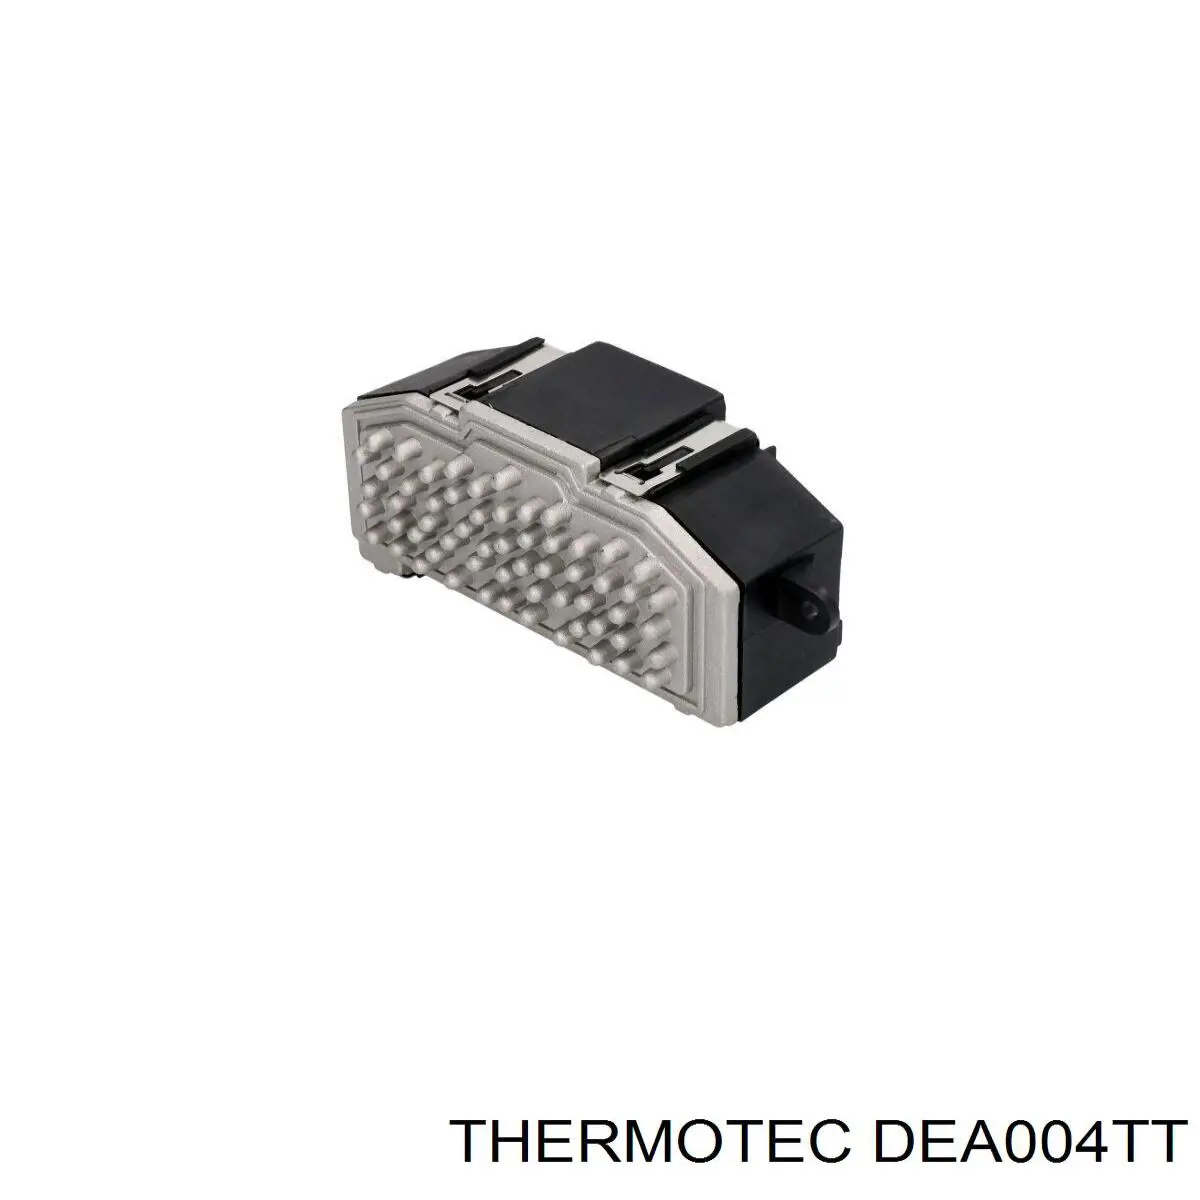 DEA004TT Thermotec resistencia de calefacción